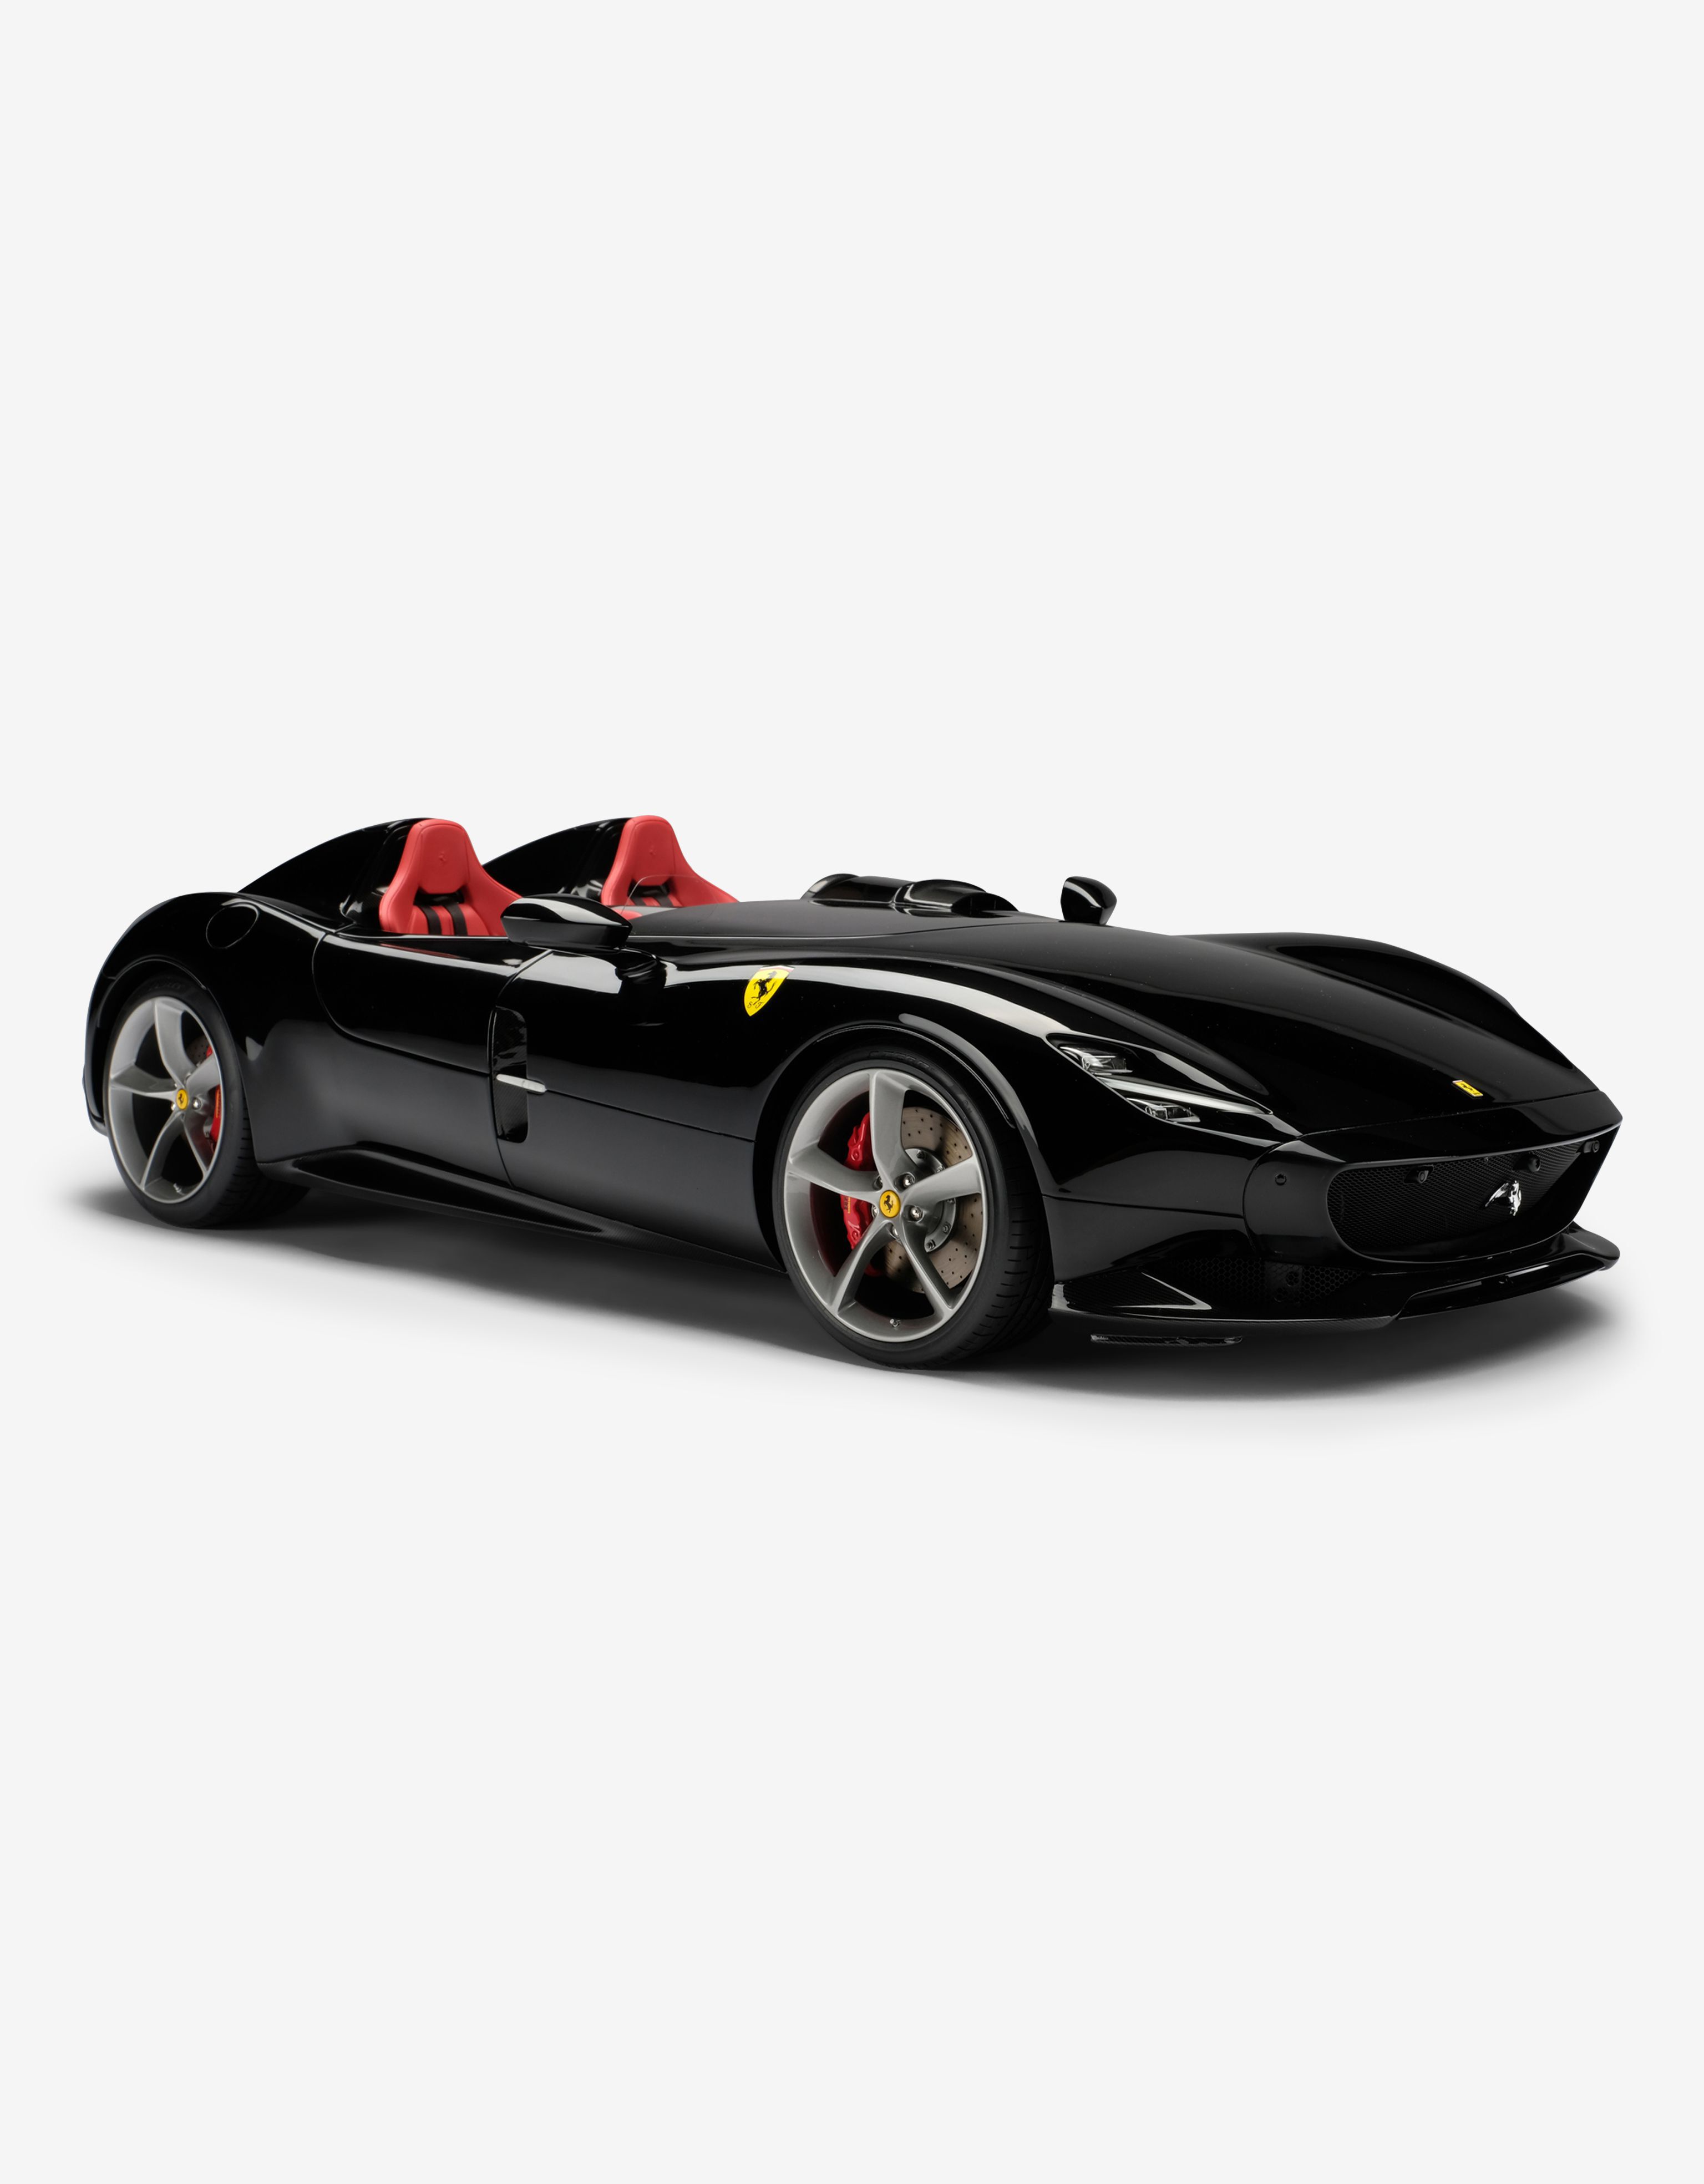 Ferrari Monza SP2 モデルカー 1:8スケール、マルチカラーの | Ferrari®